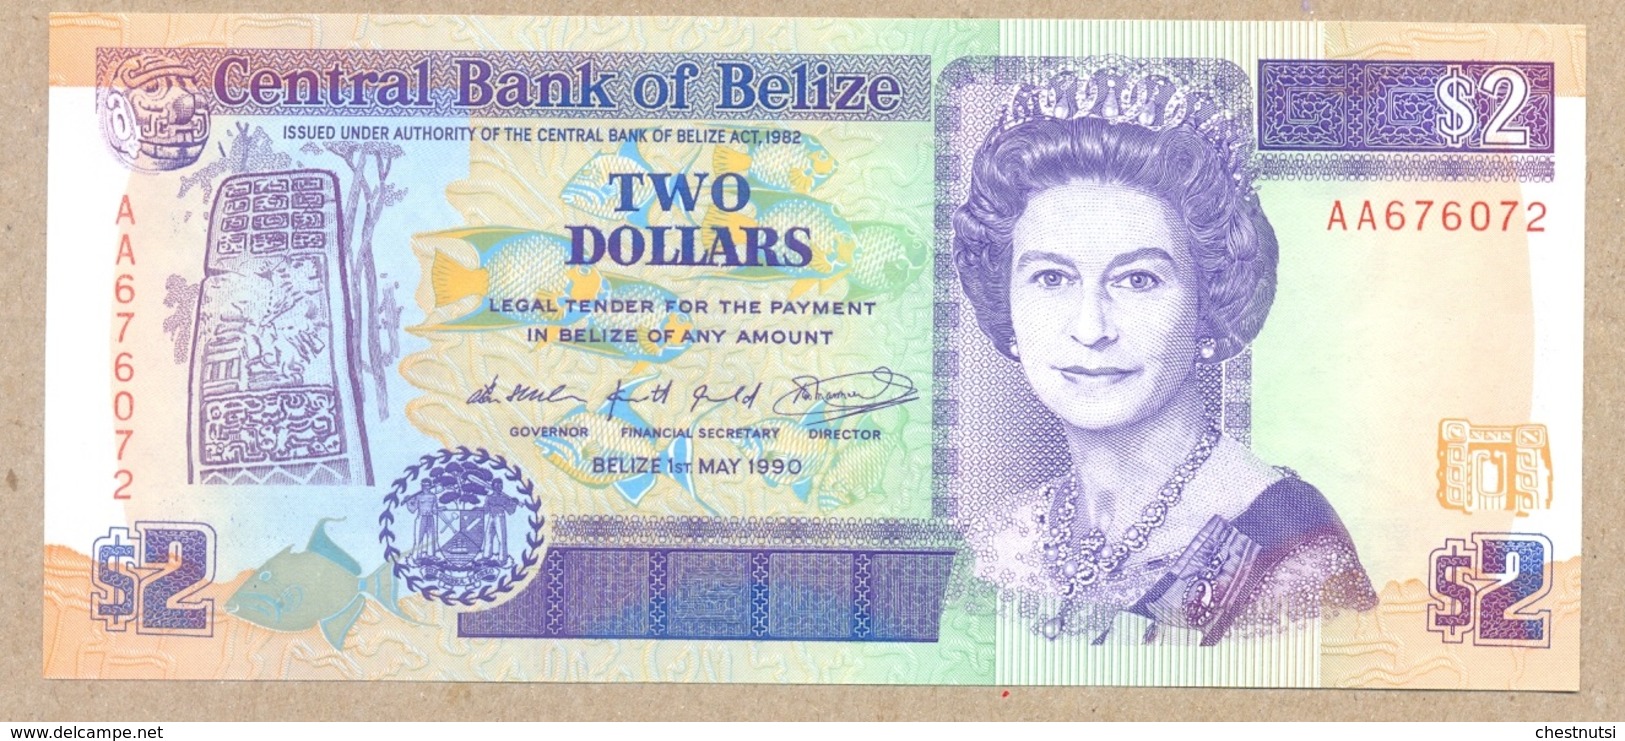 Belize 2 Dollars 1990  P52  UNC - Belice